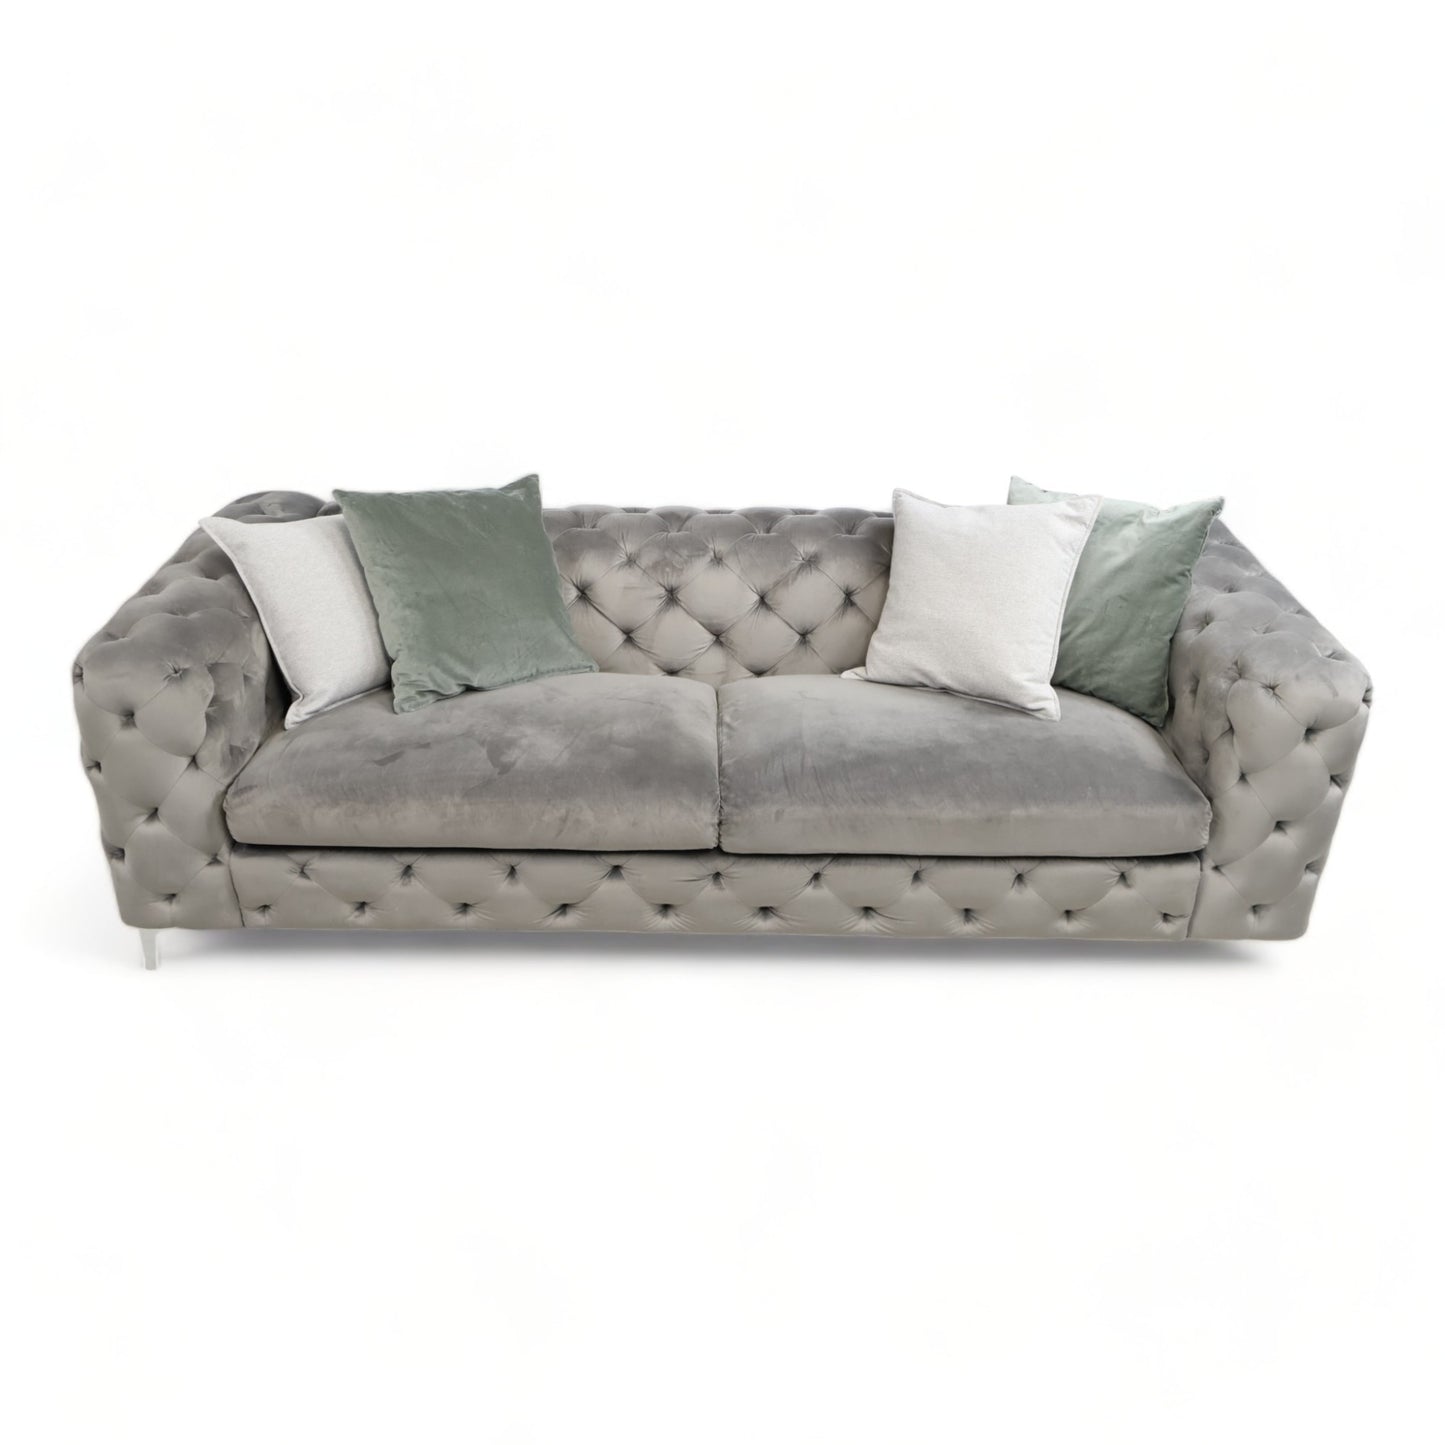 Nyrenset | Bella 3-seter sofa fra A-Møbler